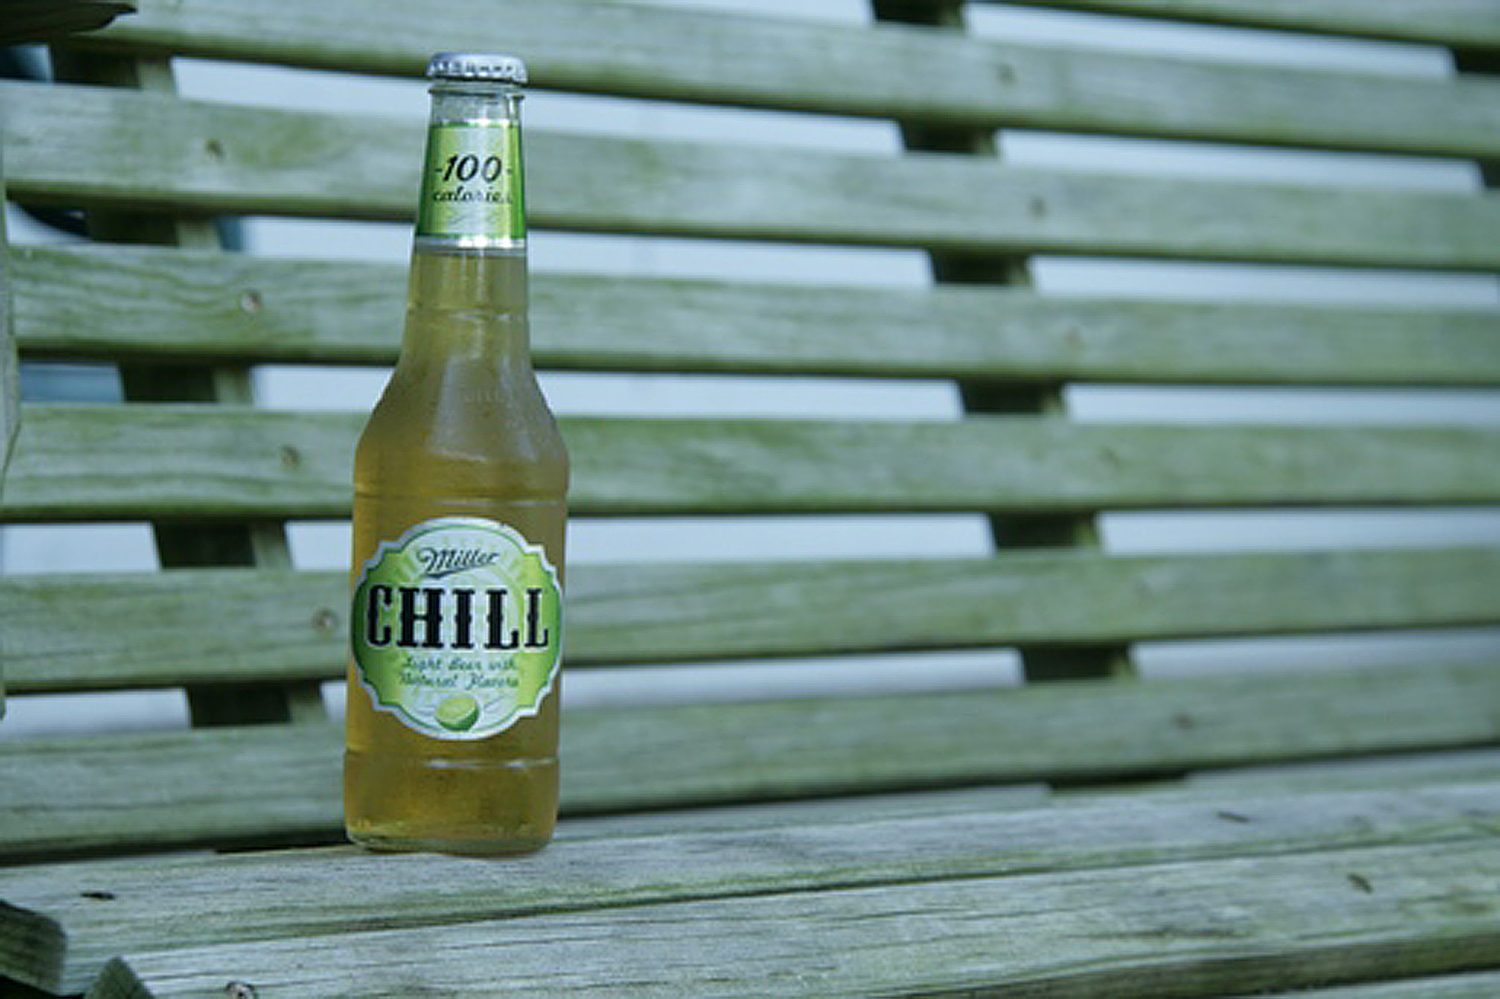 Miller Chill summer beer has been retired.